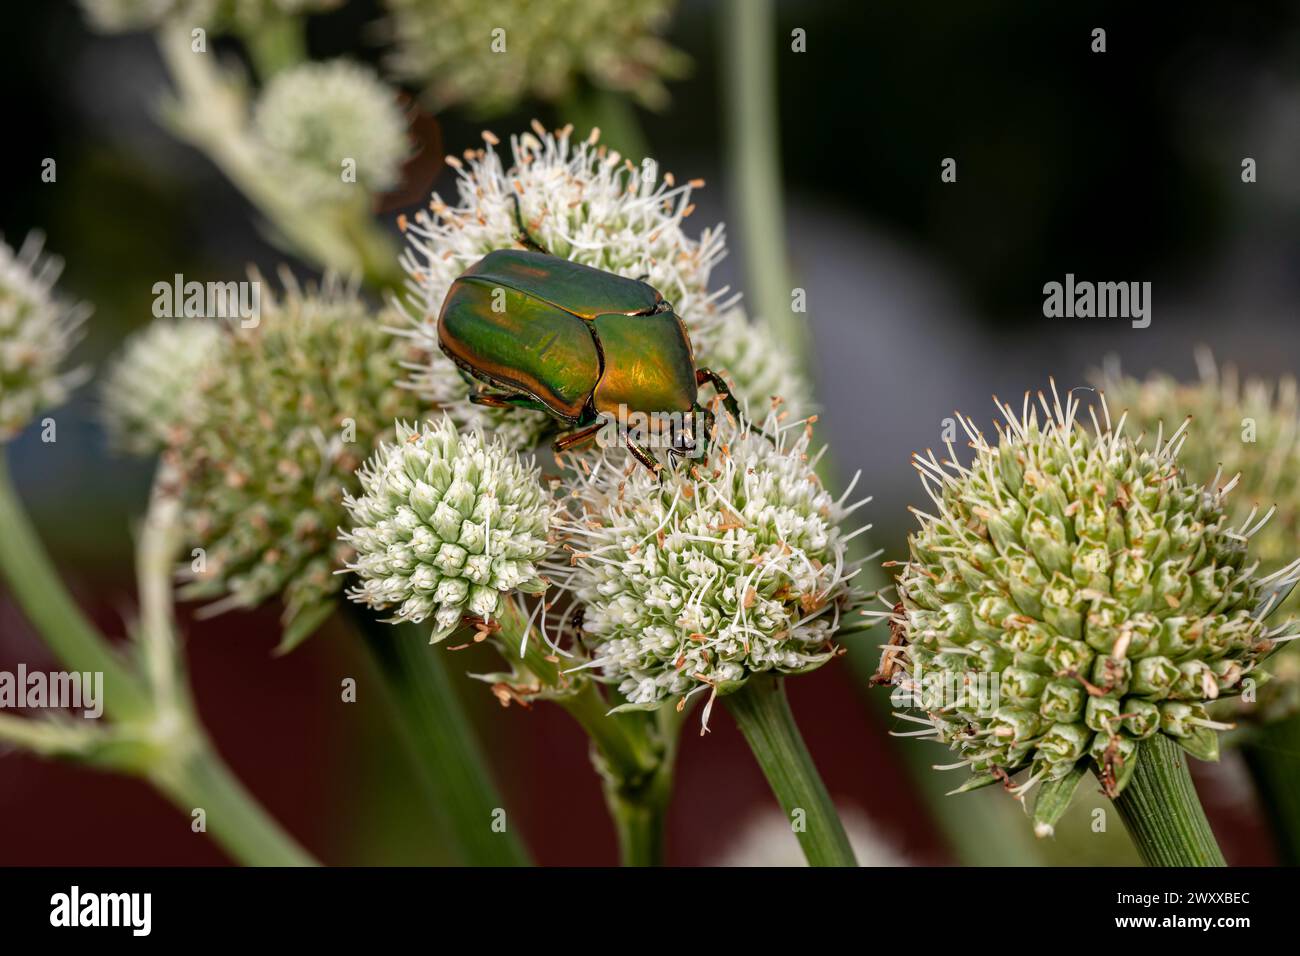 Grüner Juni-Käfer oder Grüner Juni-Käfer auf der Blume der Klapperschlange Meisterpflanze. Insekten- und Tierschutz, Rasen- und Gartenschädlingskonzept. Stockfoto